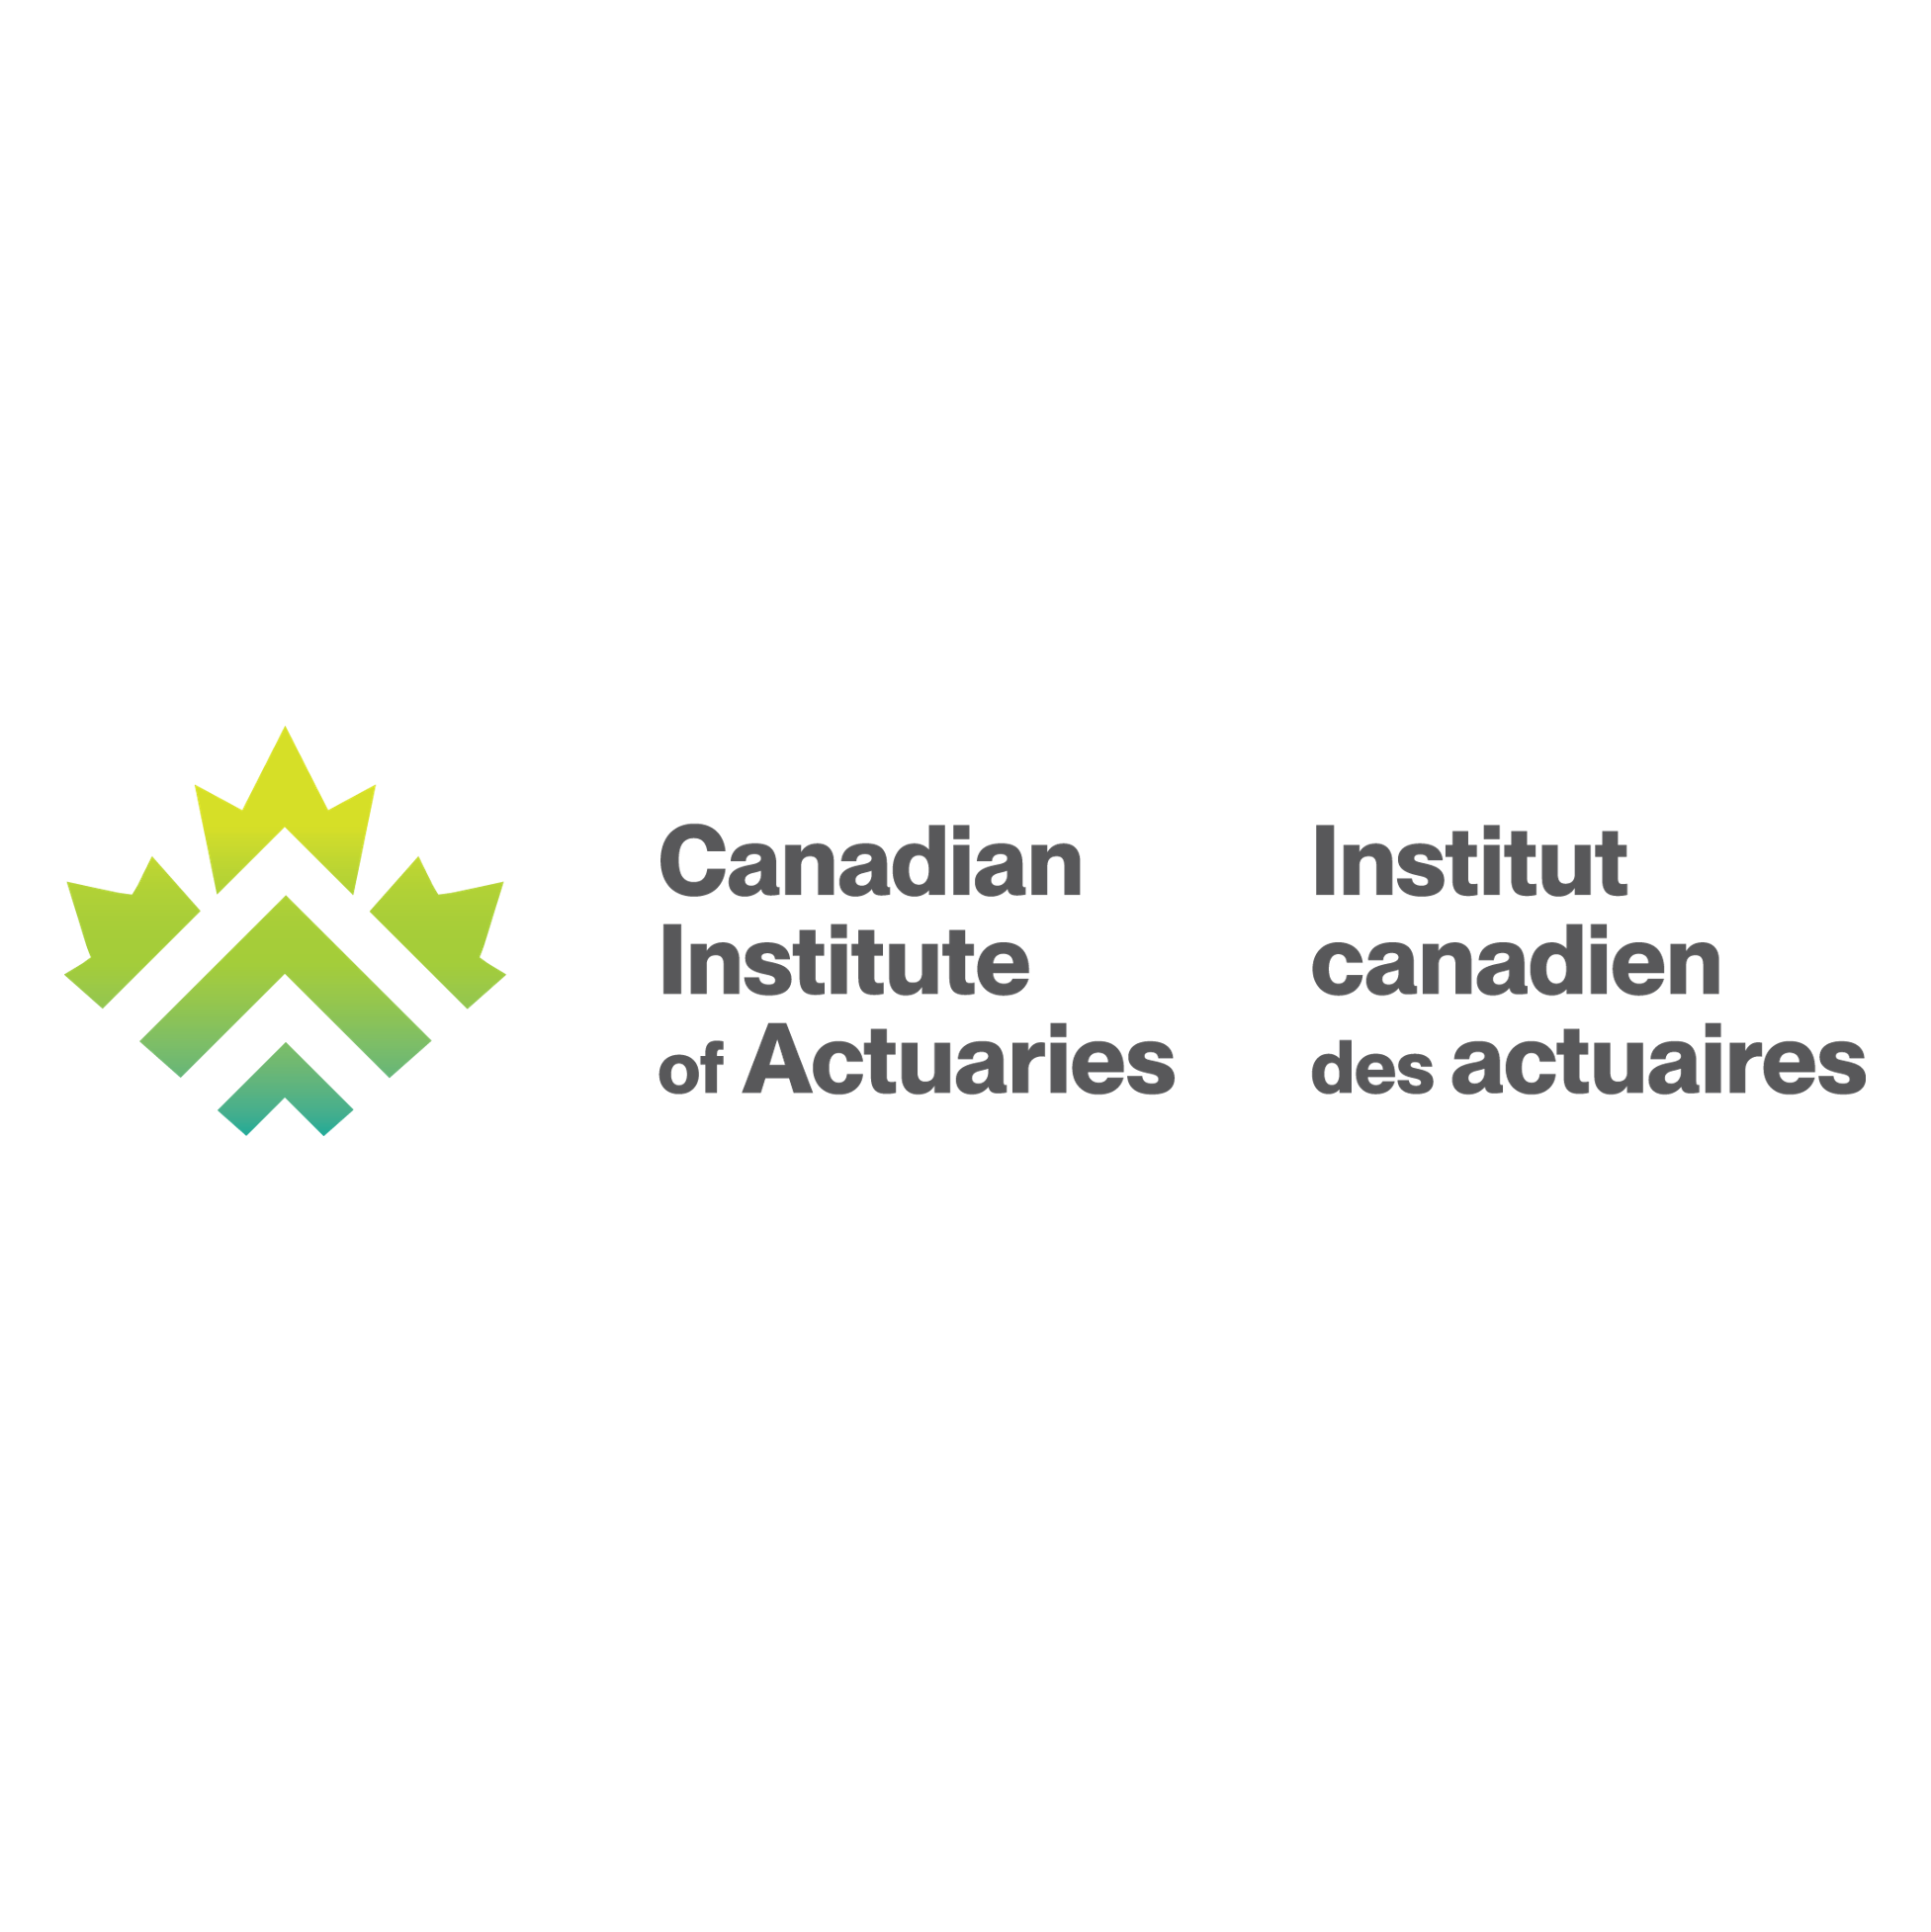 Canadian Institute of Actuaries